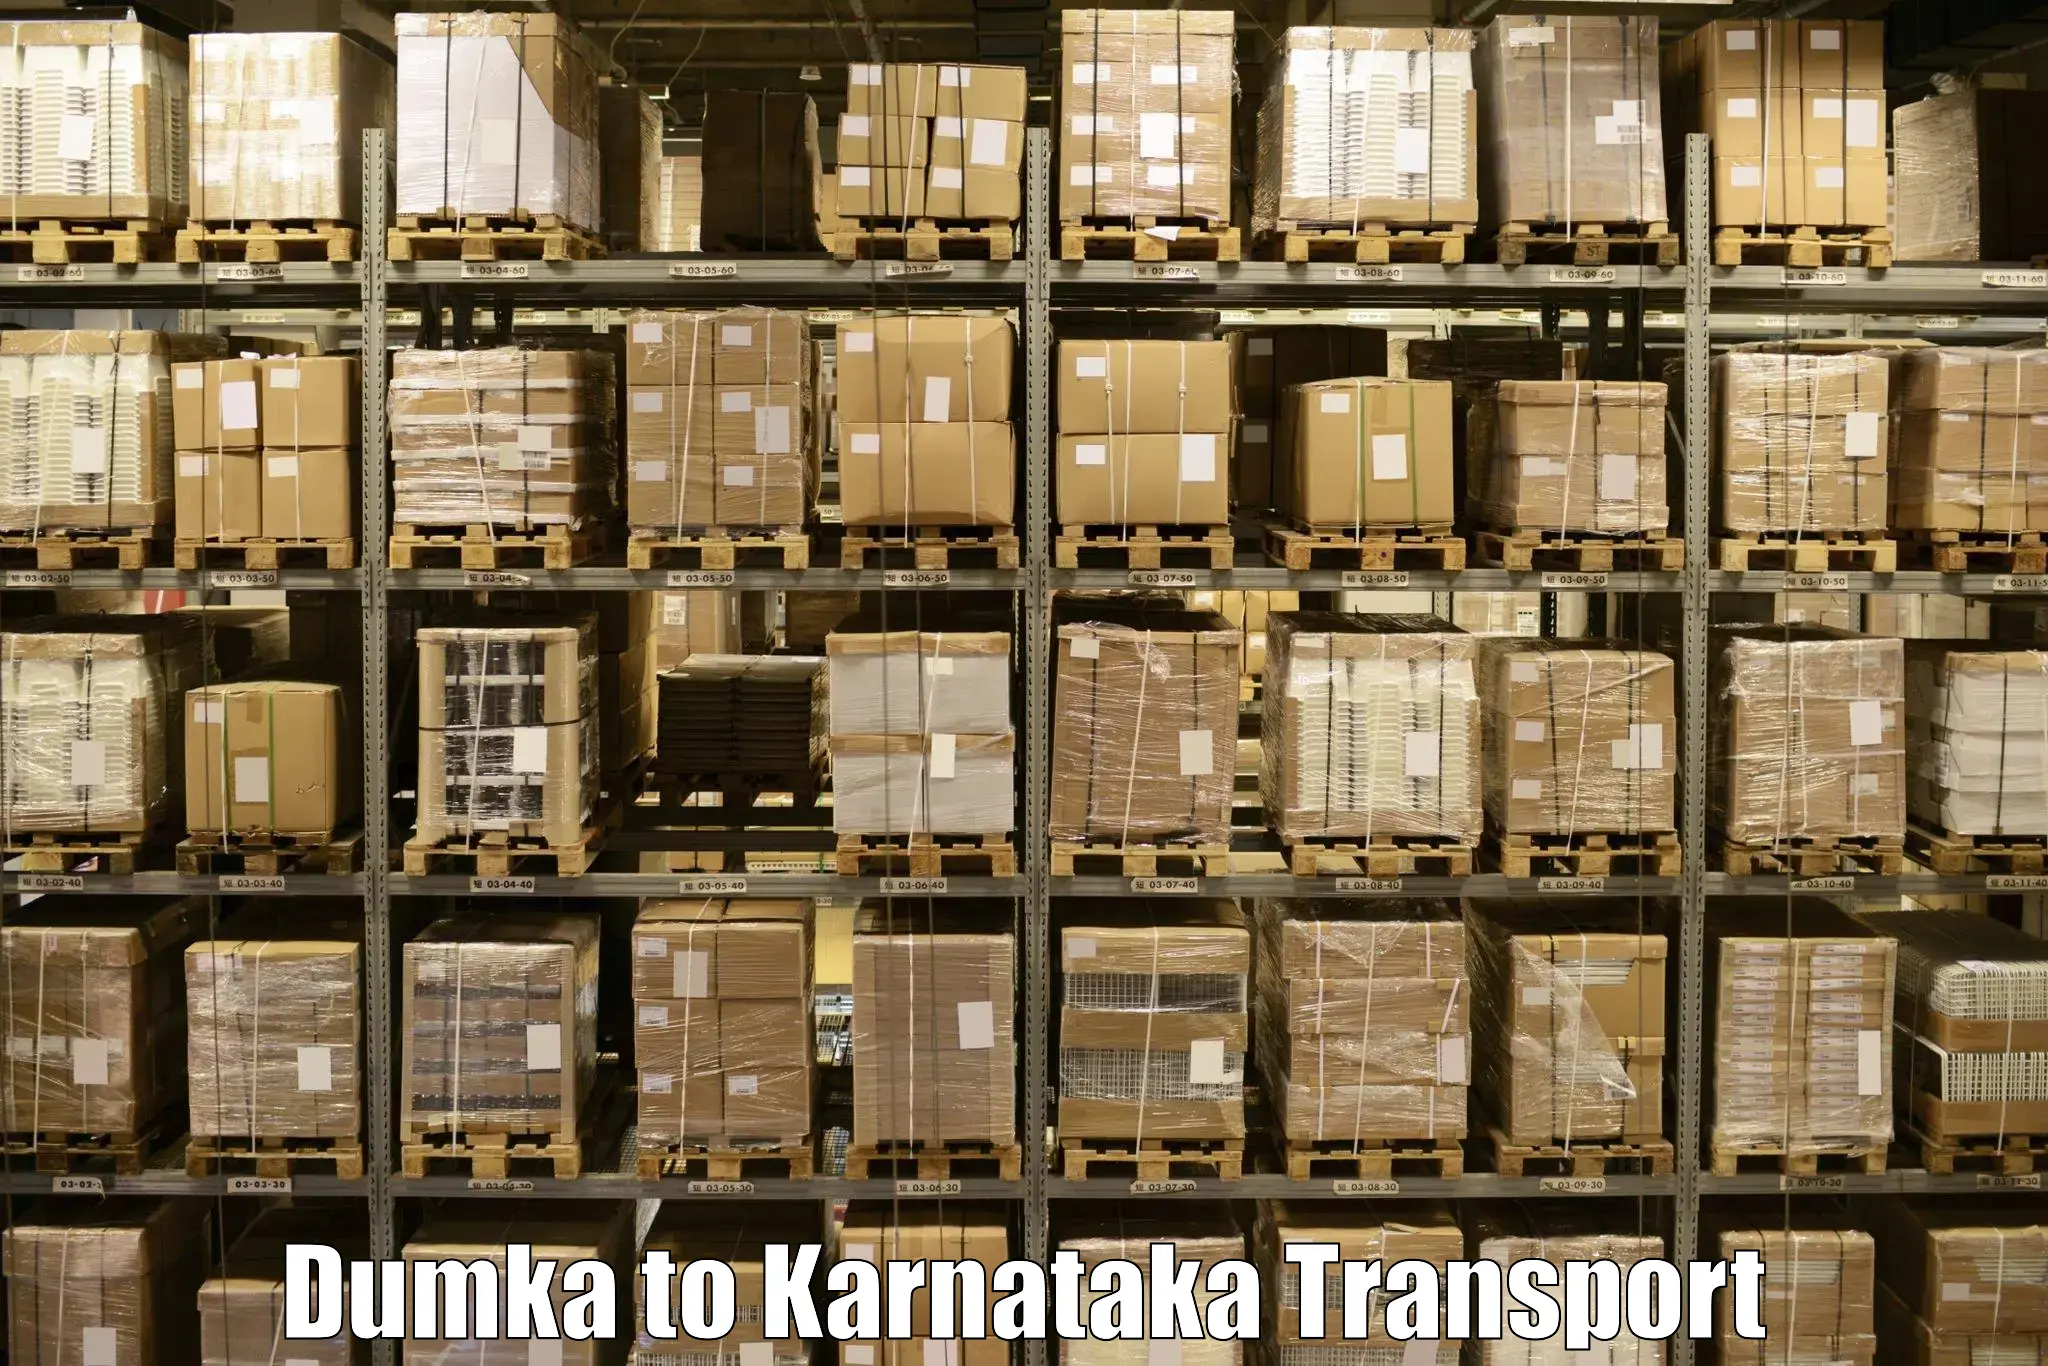 Nearby transport service Dumka to Mysore